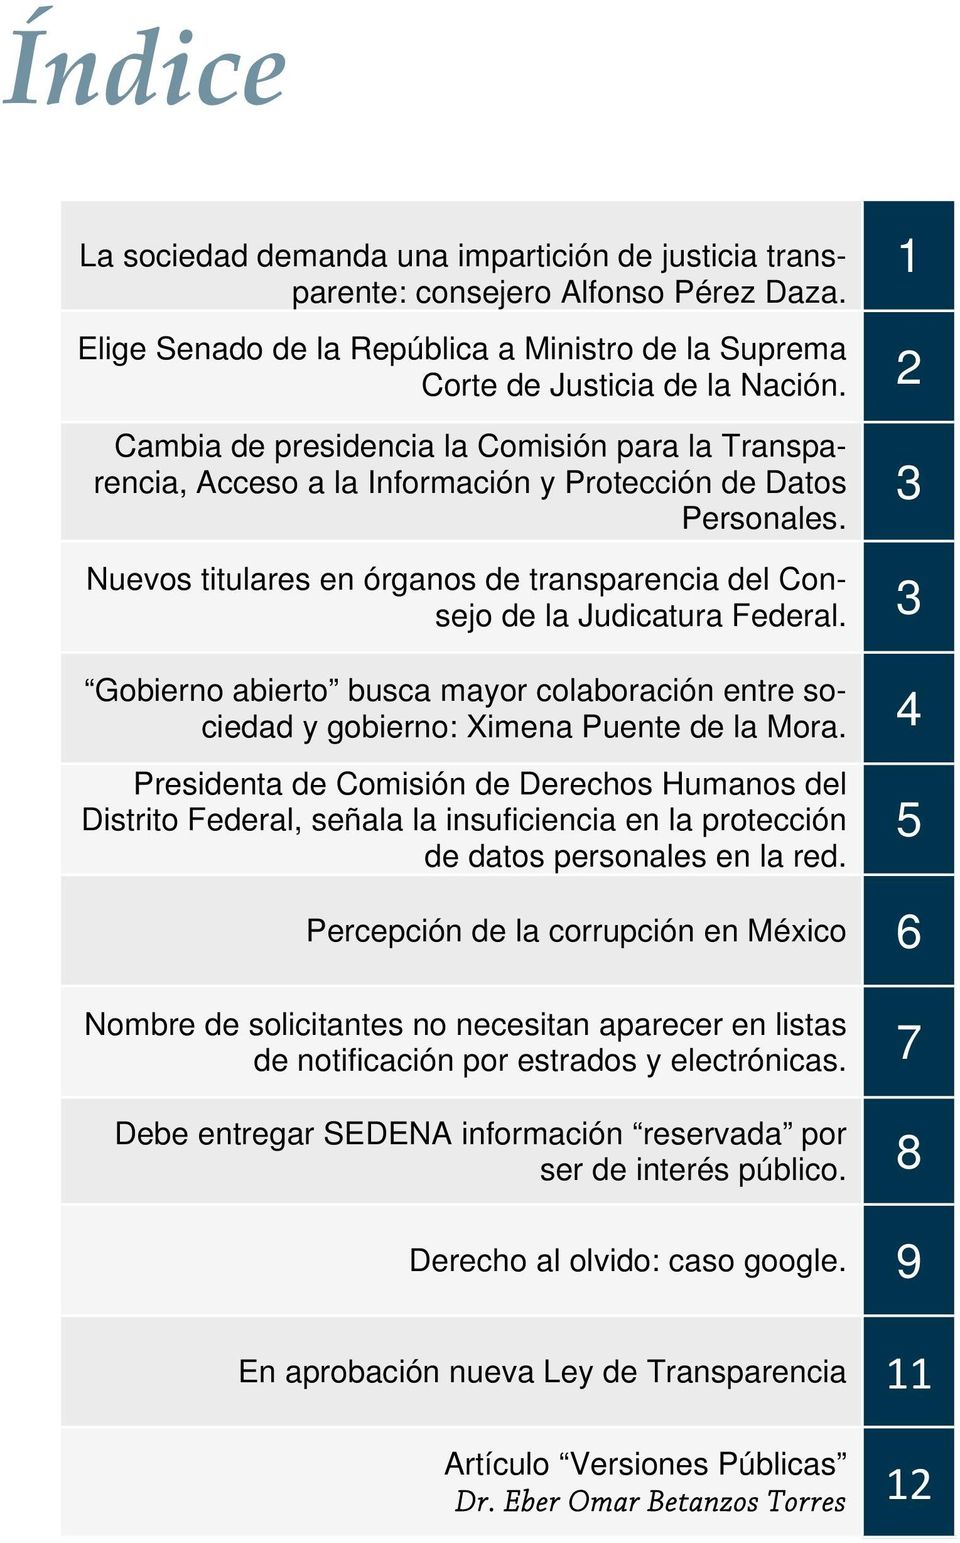 3 Nuevos titulares en órganos de transparencia del Consejo de la Judicatura Federal. 3 Gobierno abierto busca mayor colaboración entre sociedad y gobierno: Ximena Puente de la Mora.